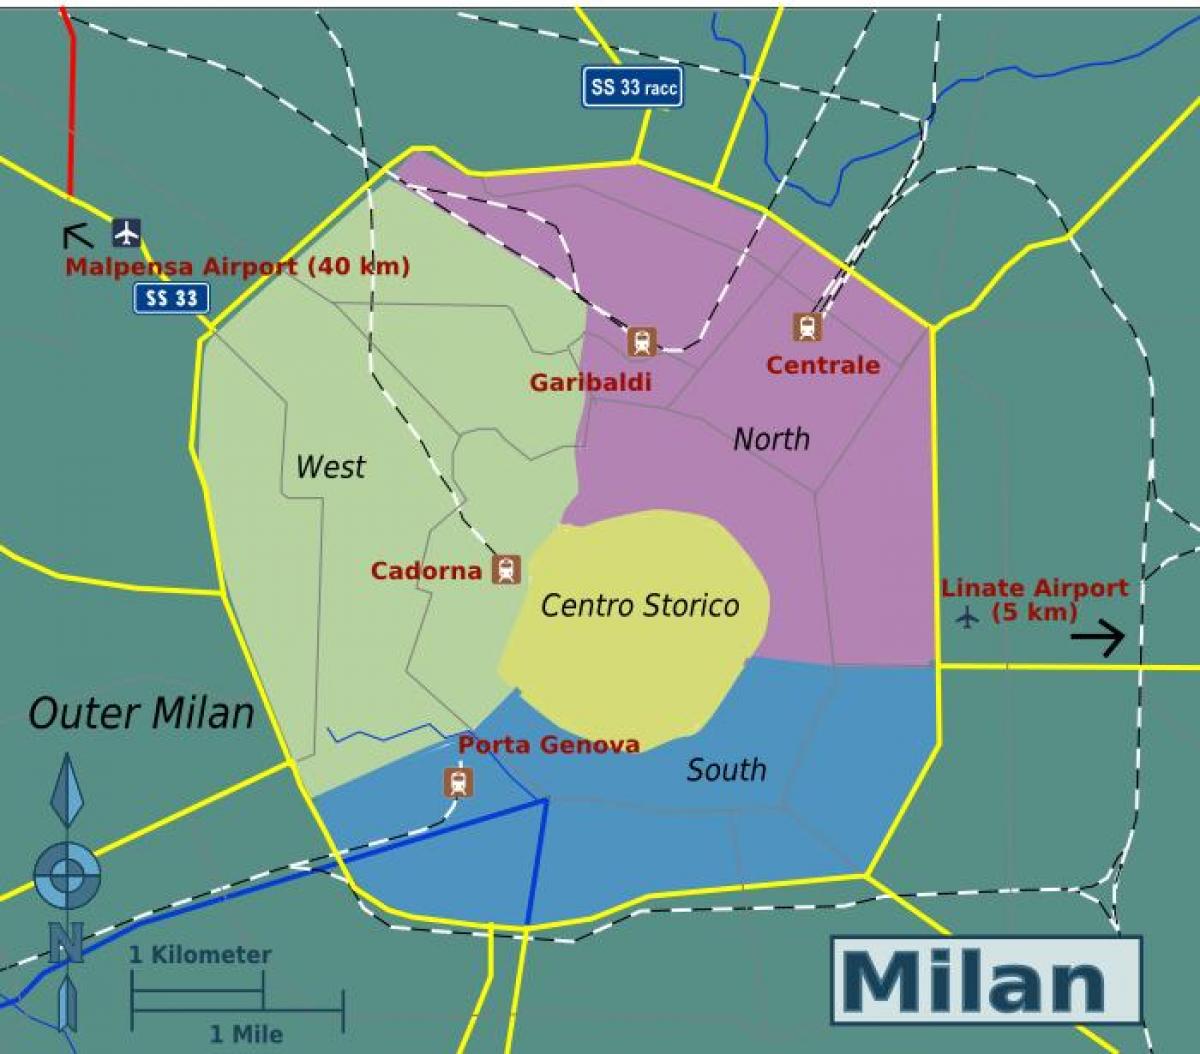 Mapa del distrito de Milán